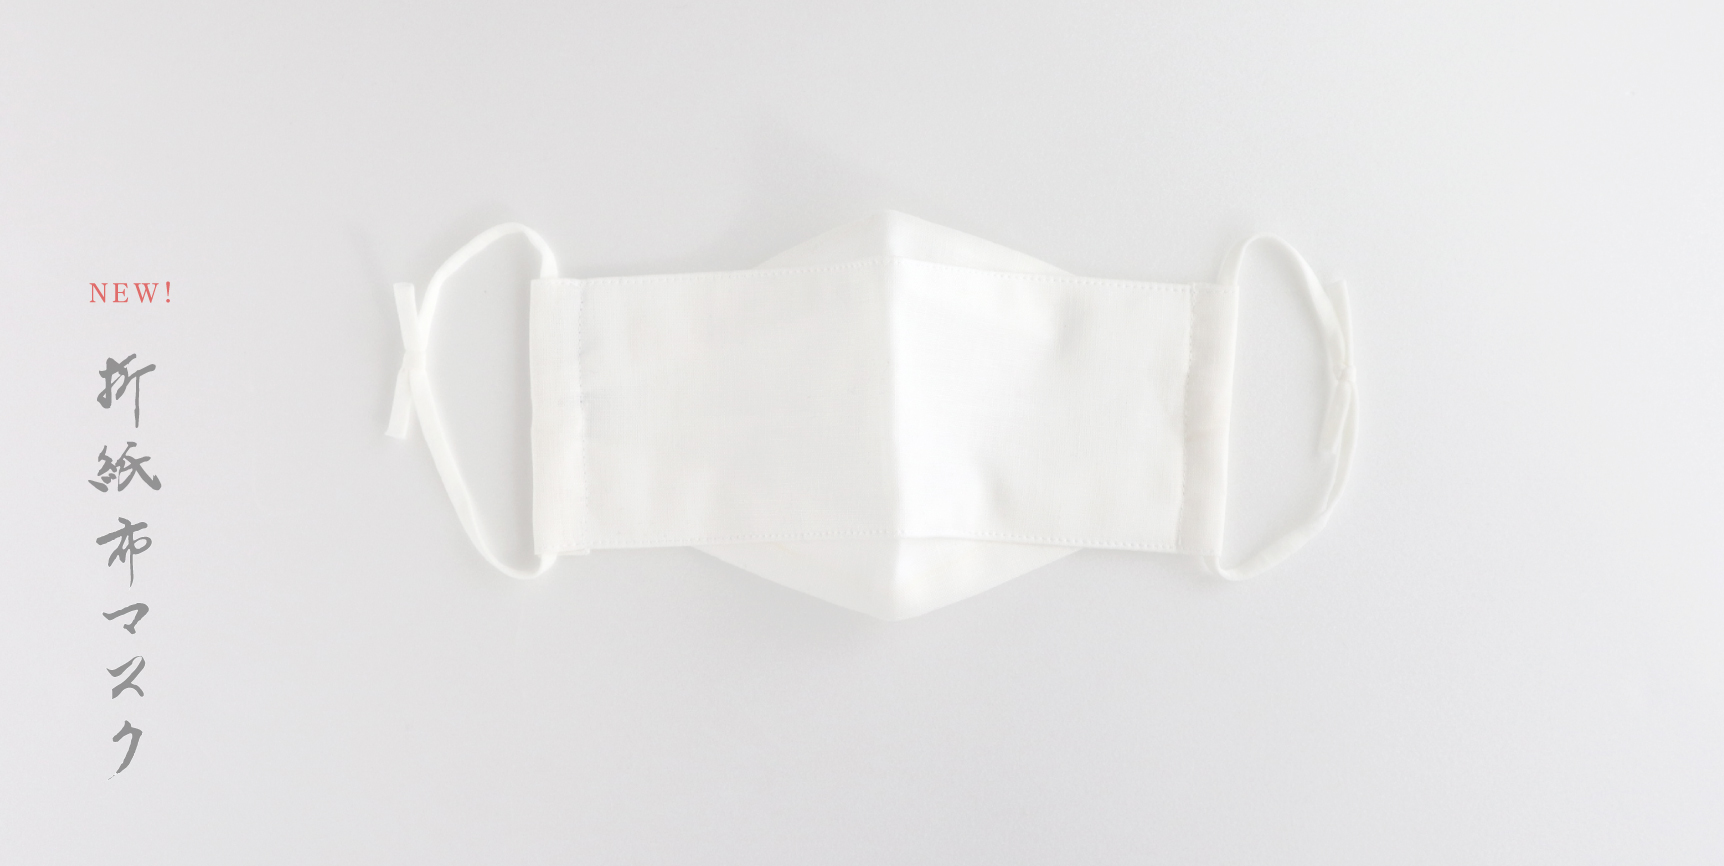 【新商品】折紙布マスク販売開始のお知らせ